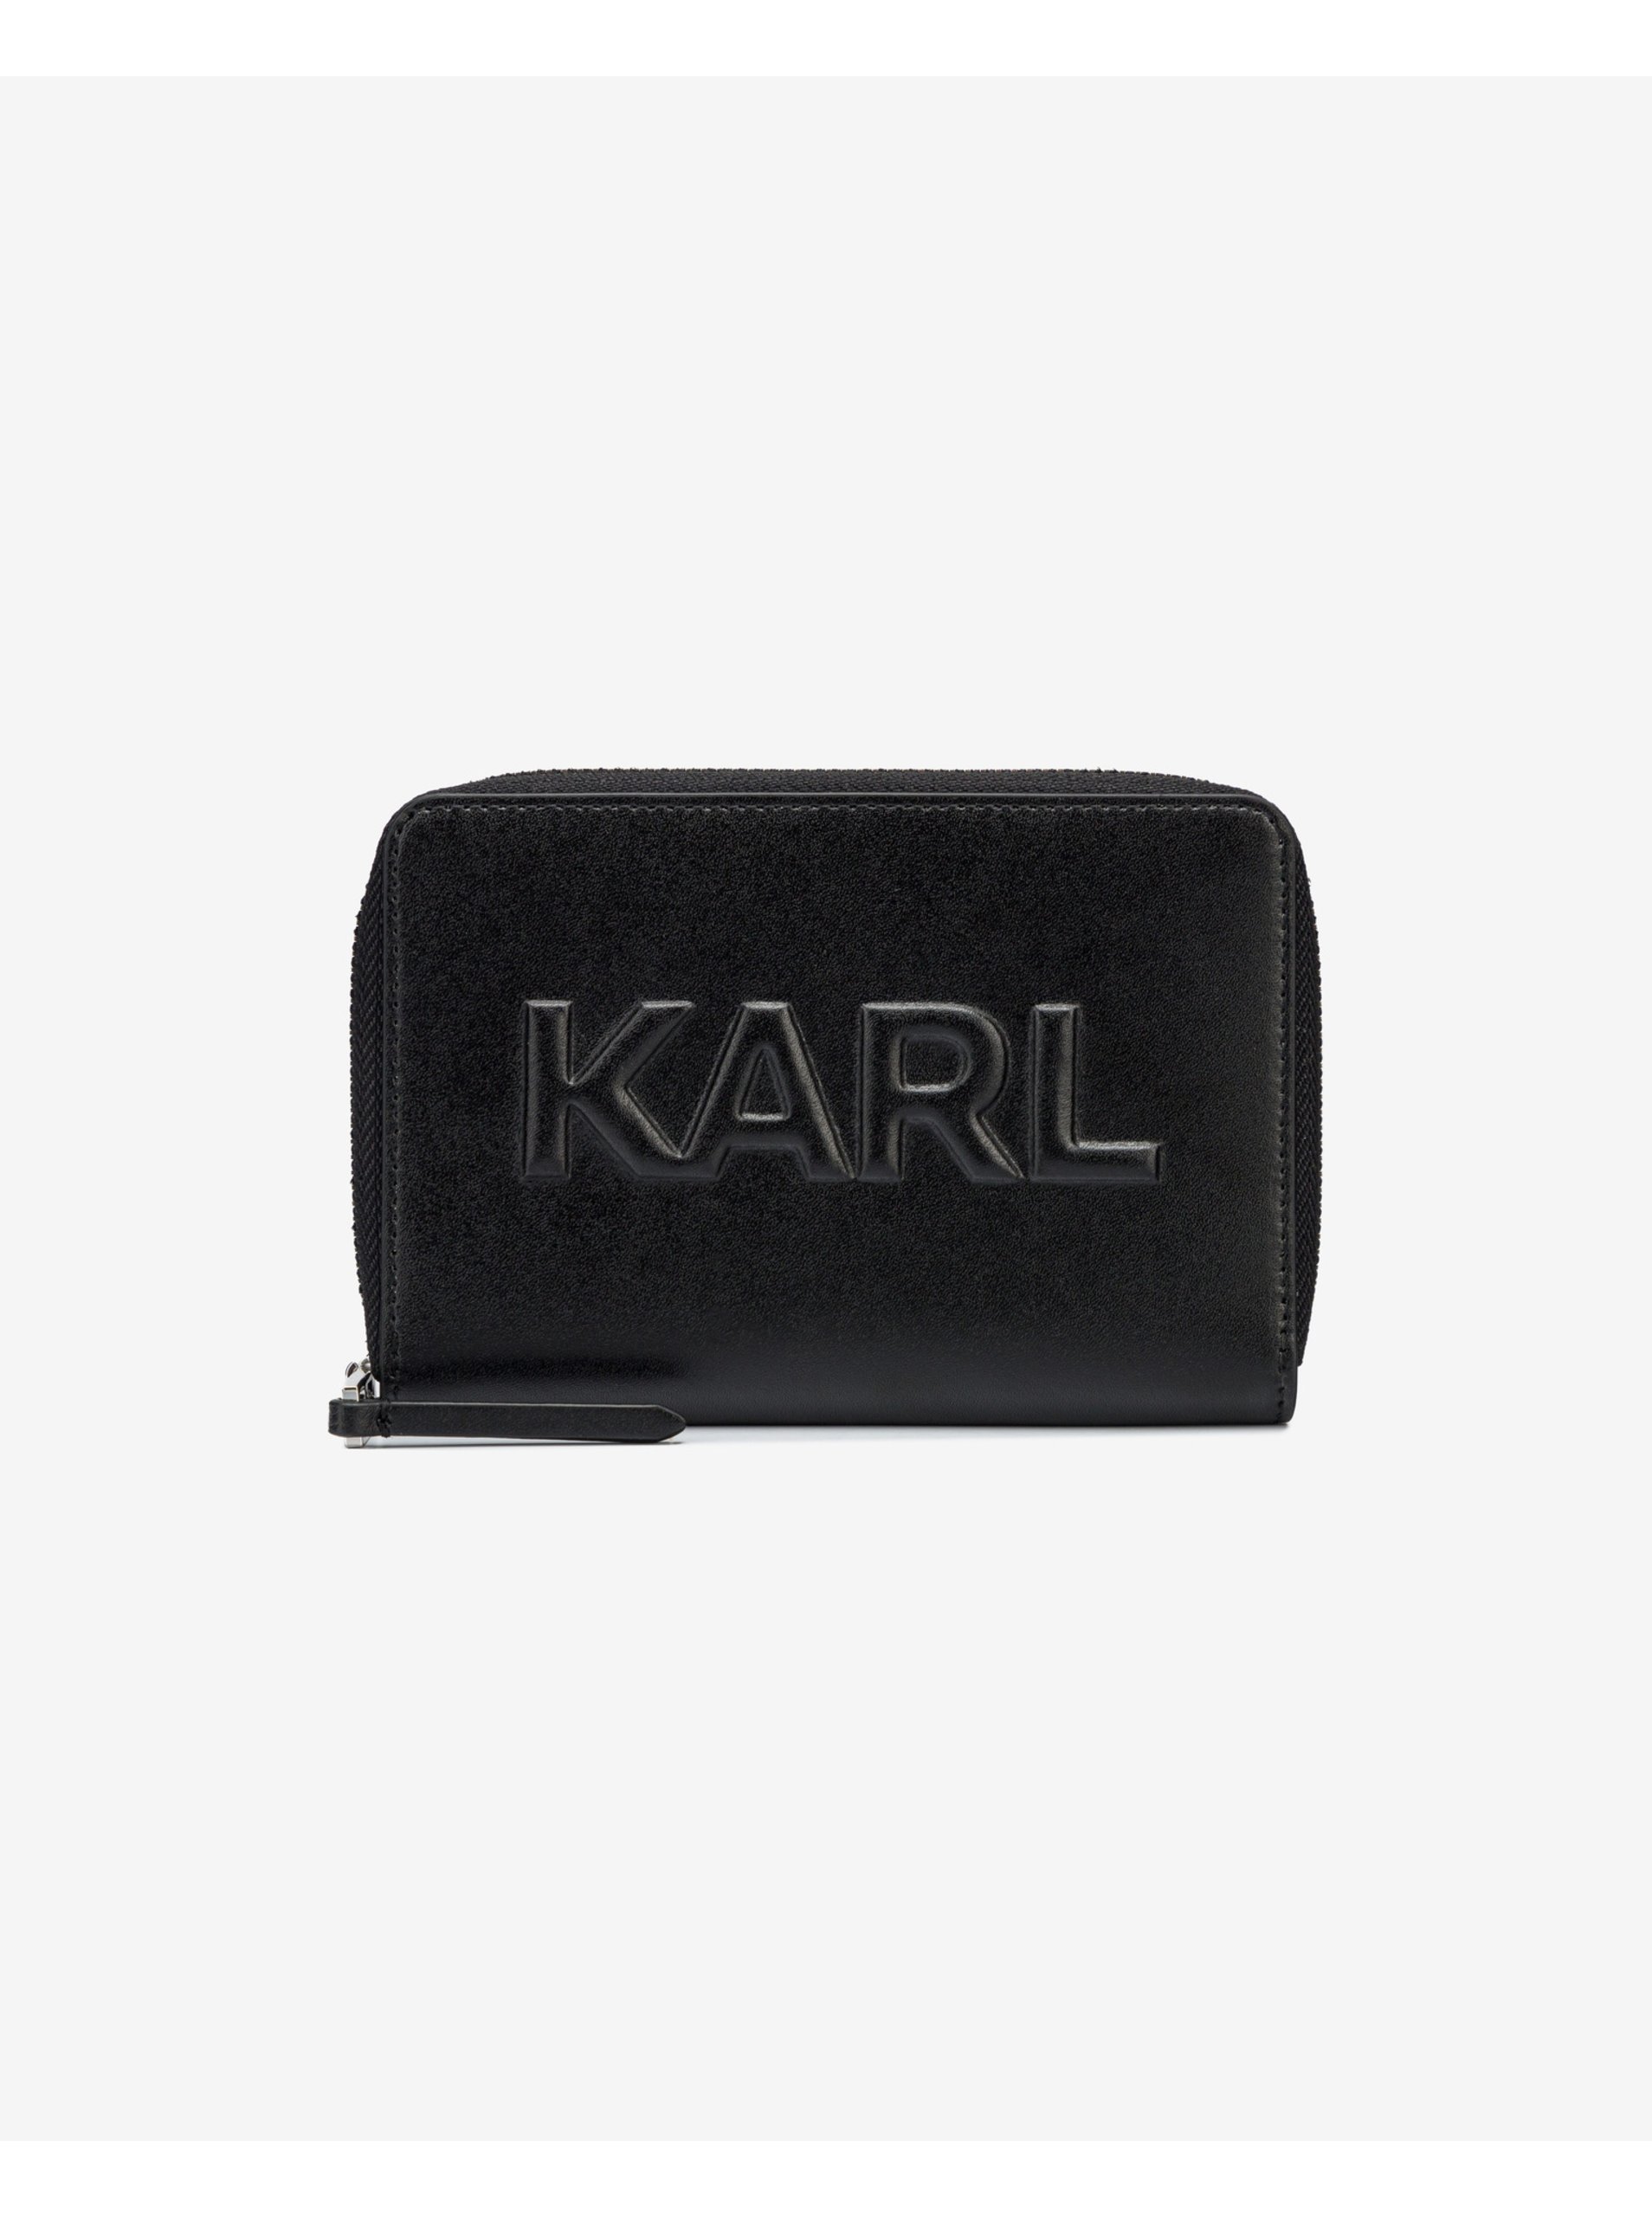 Black women's leather wallet KARL LAGERFELD